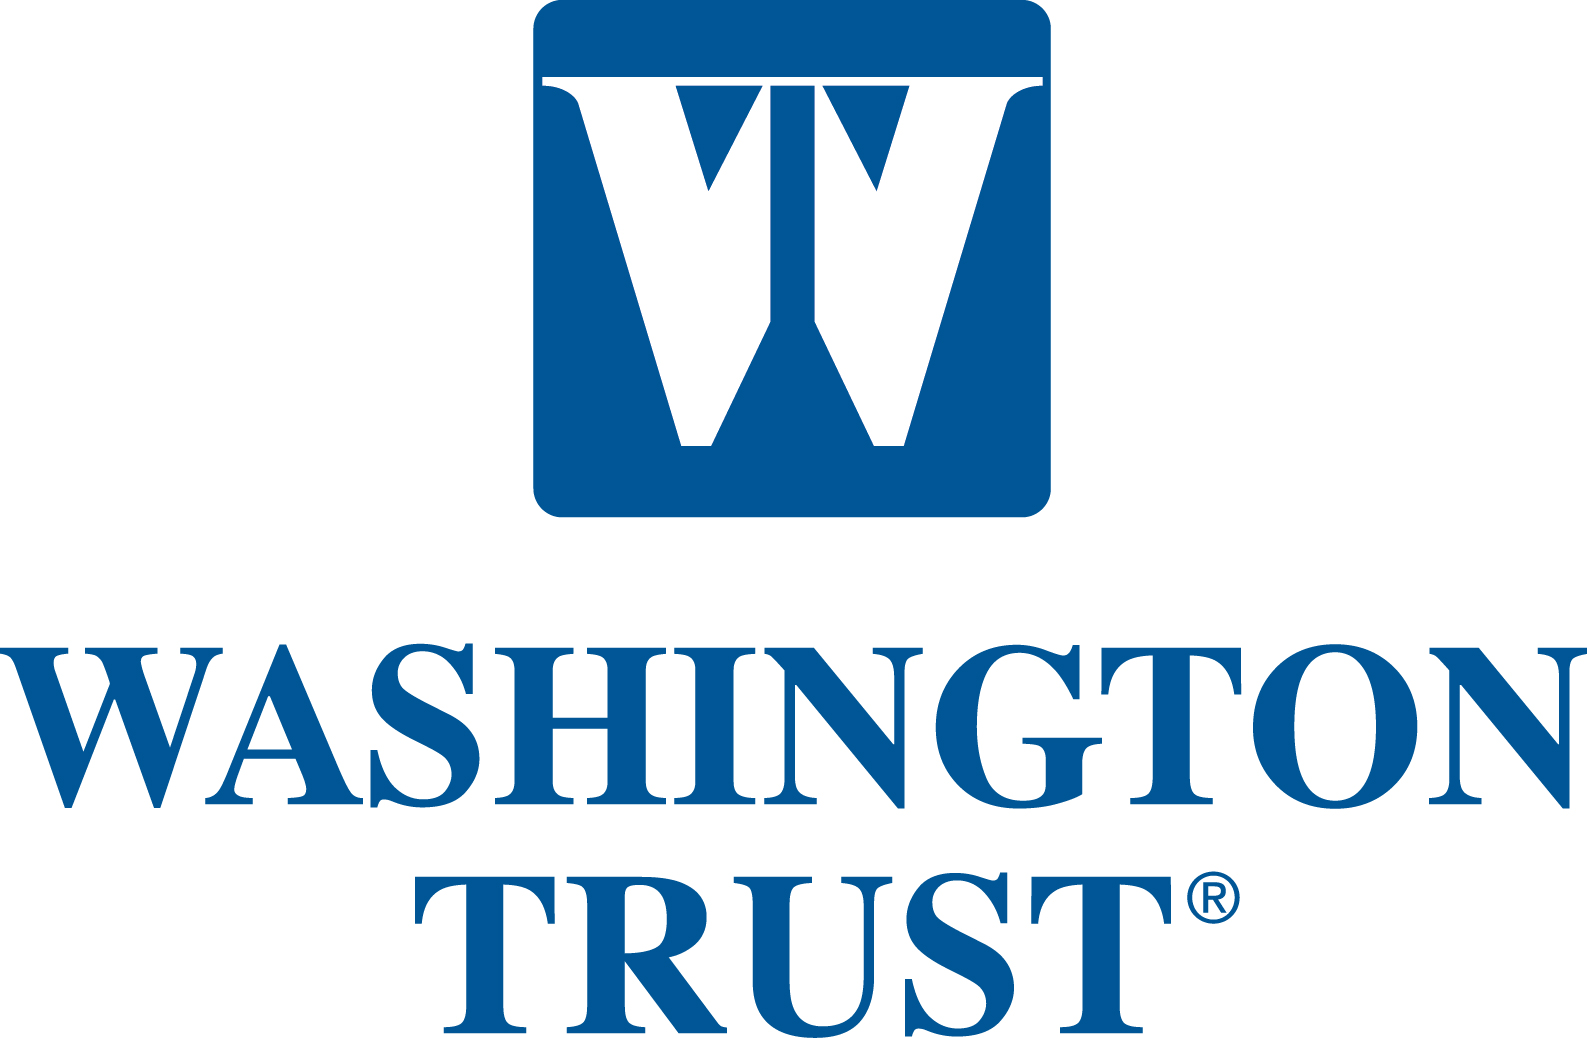 Washington Trust Company